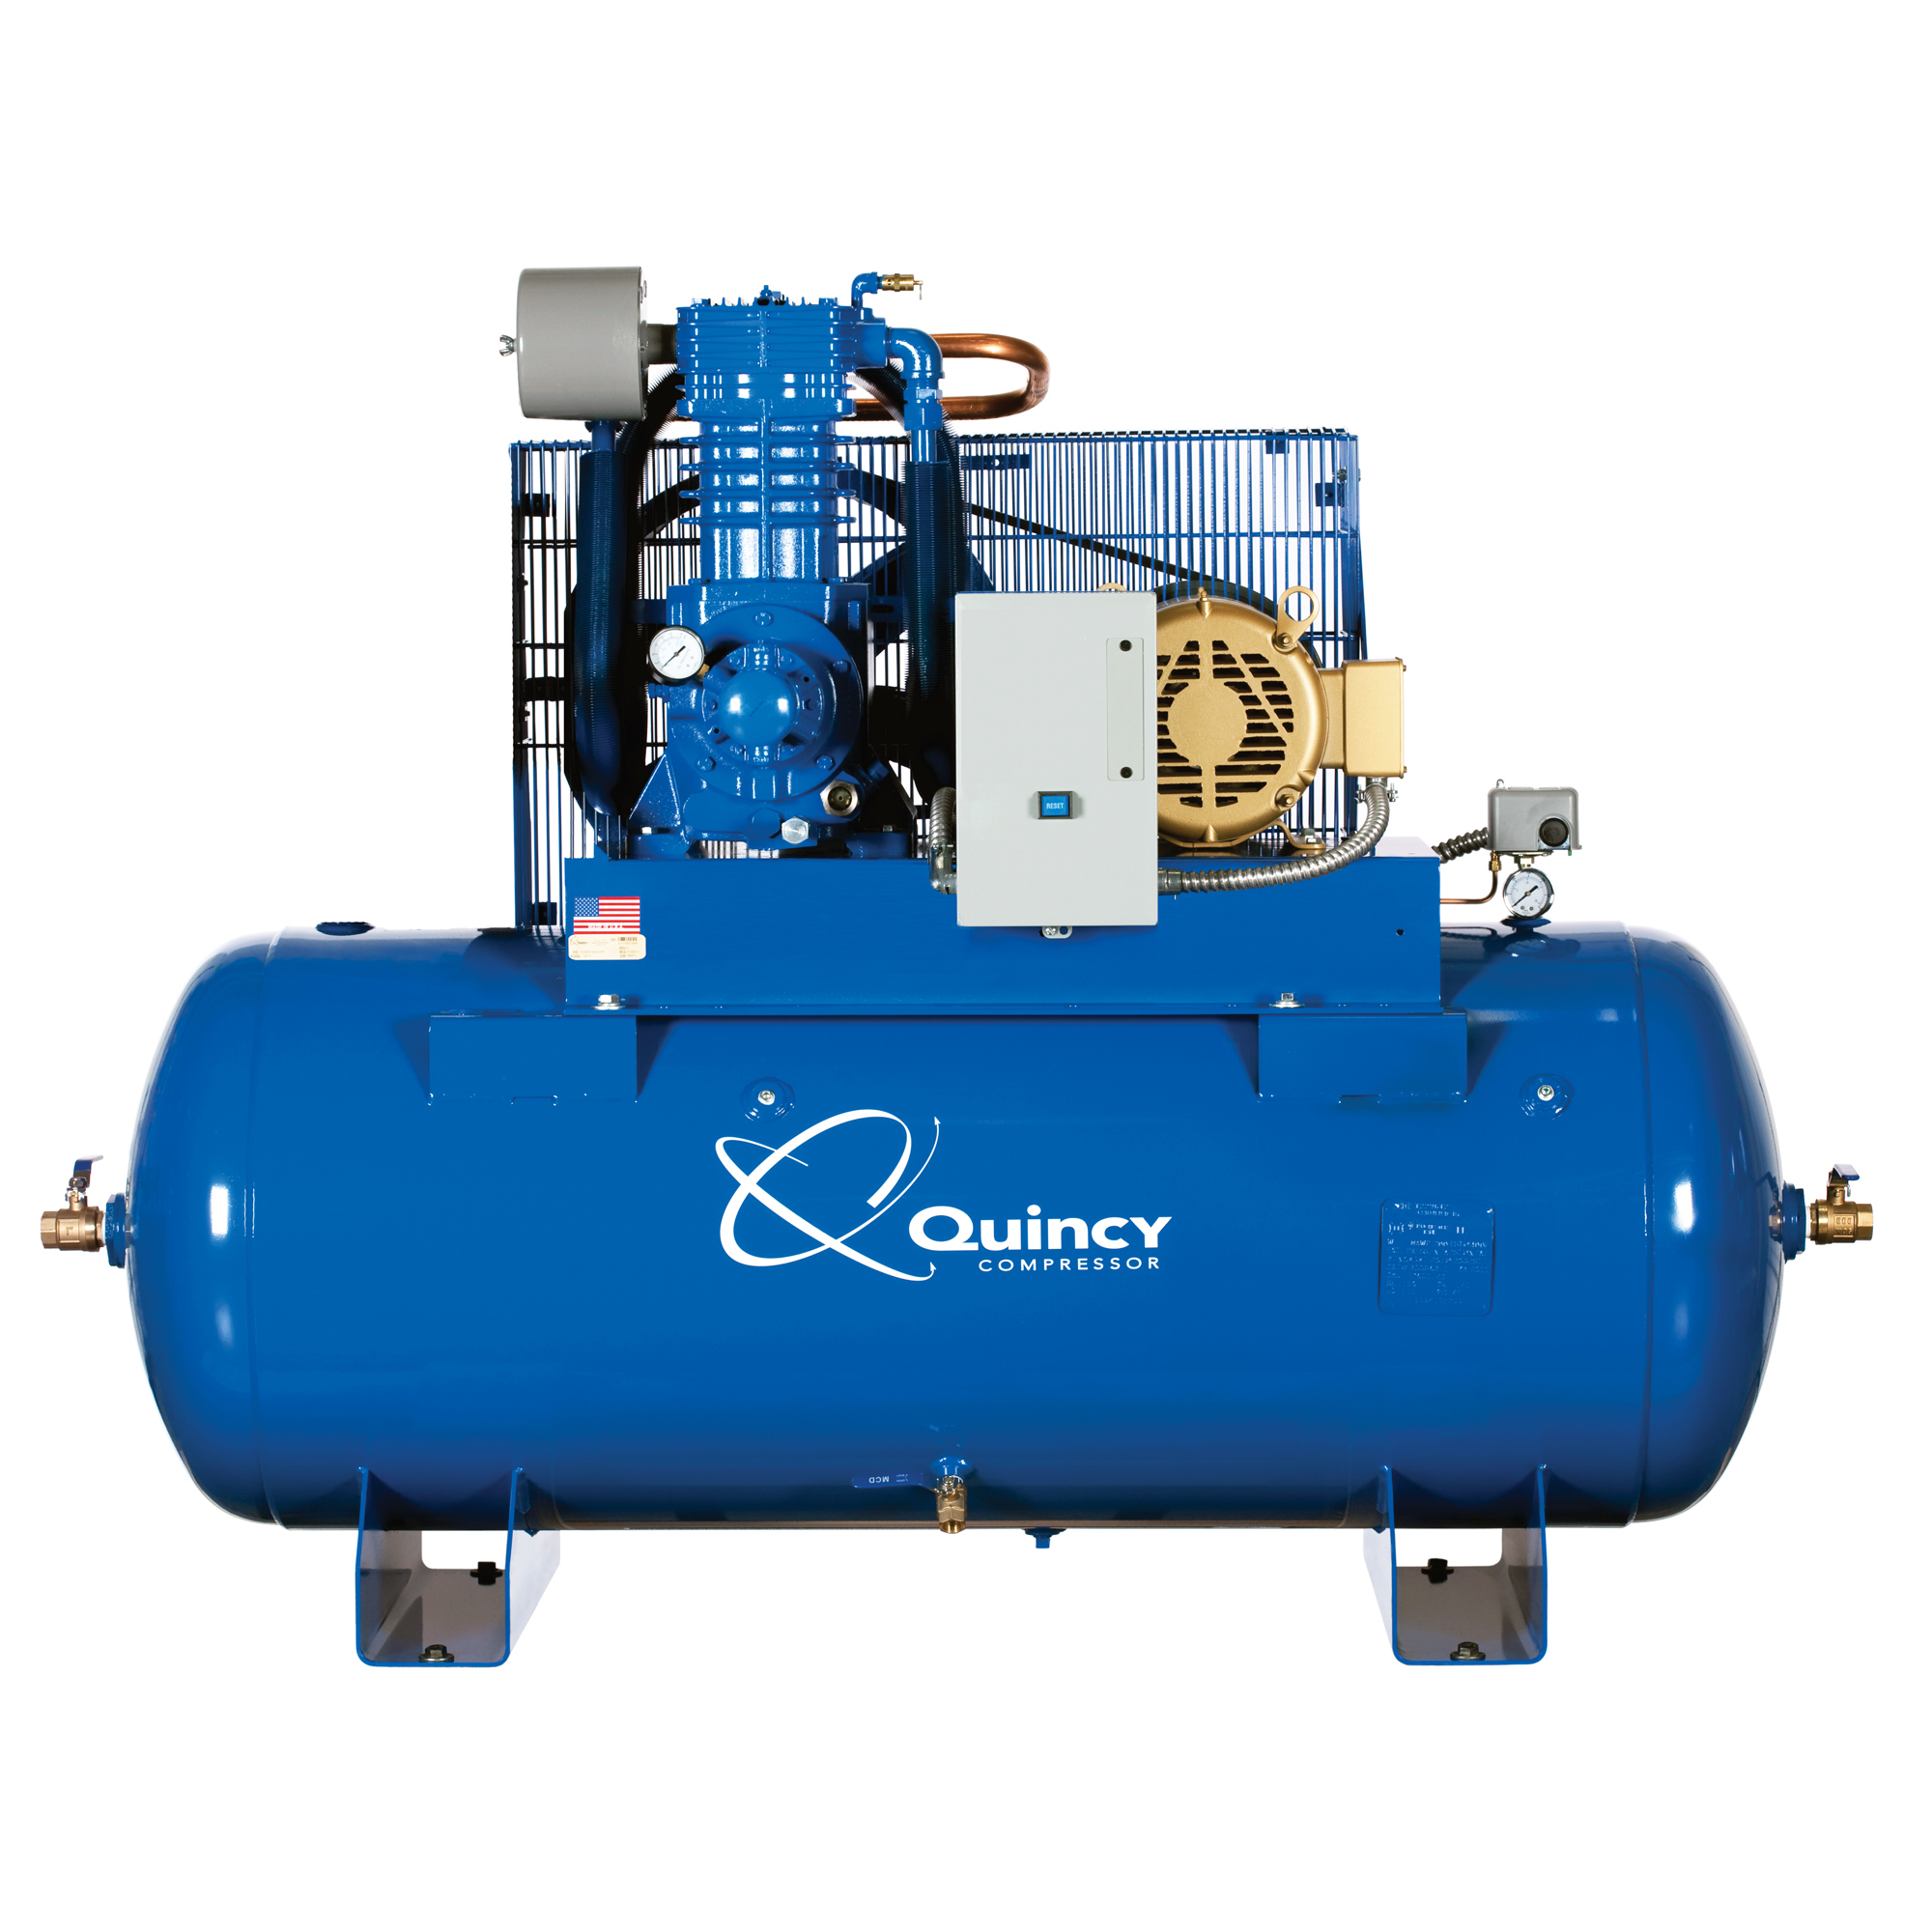 Quincy Compressor, QP1 5H 80G 2S Air Compressor 230V 3ph H MAX, Horsepower 5 HP, Air Tank Size 80 Gal, Volts 230 Model 553D80HCA23M